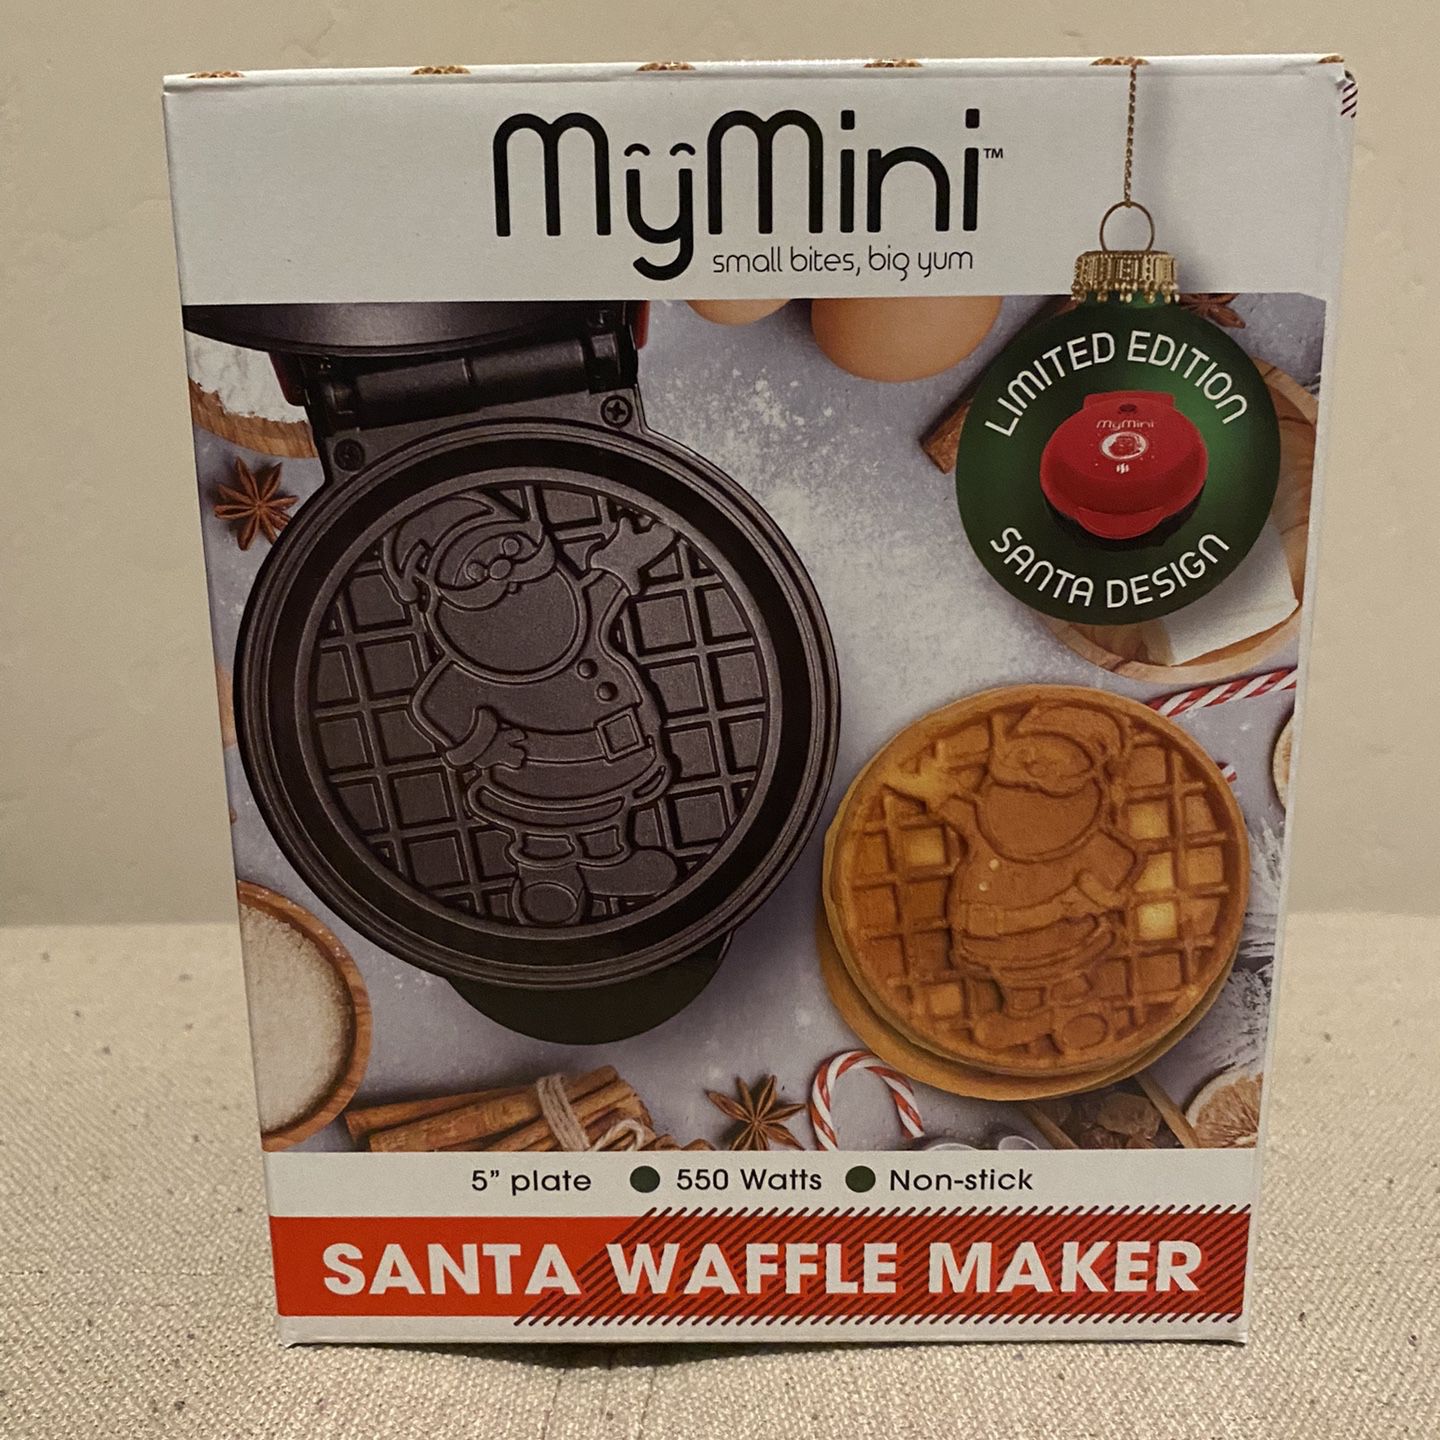 Santa Nostalgia MyMini Waffle Maker for Sale in Phoenix, AZ - OfferUp